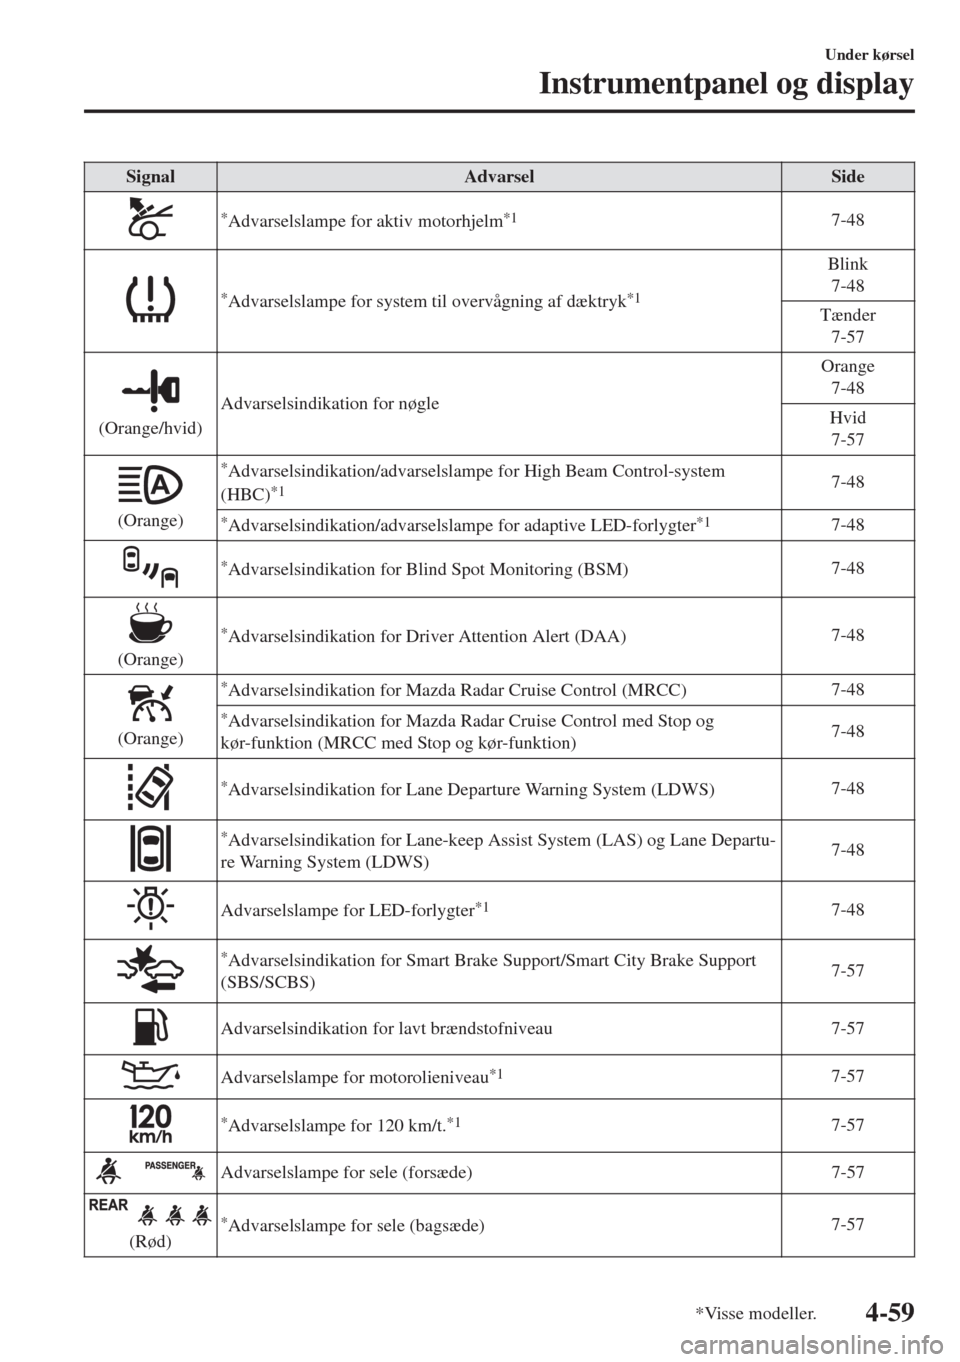 MAZDA MODEL 6 2018  Instruktionsbog (in Danish) Signal Advarsel Side
*Advarselslampe for aktiv motorhjelm*17-48
*Advarselslampe for system til overvågning af dæktryk*1
Blink
7-48
Tænder
7-57
(Orange/hvid)Advarselsindikation for nøgleOrange
7-48